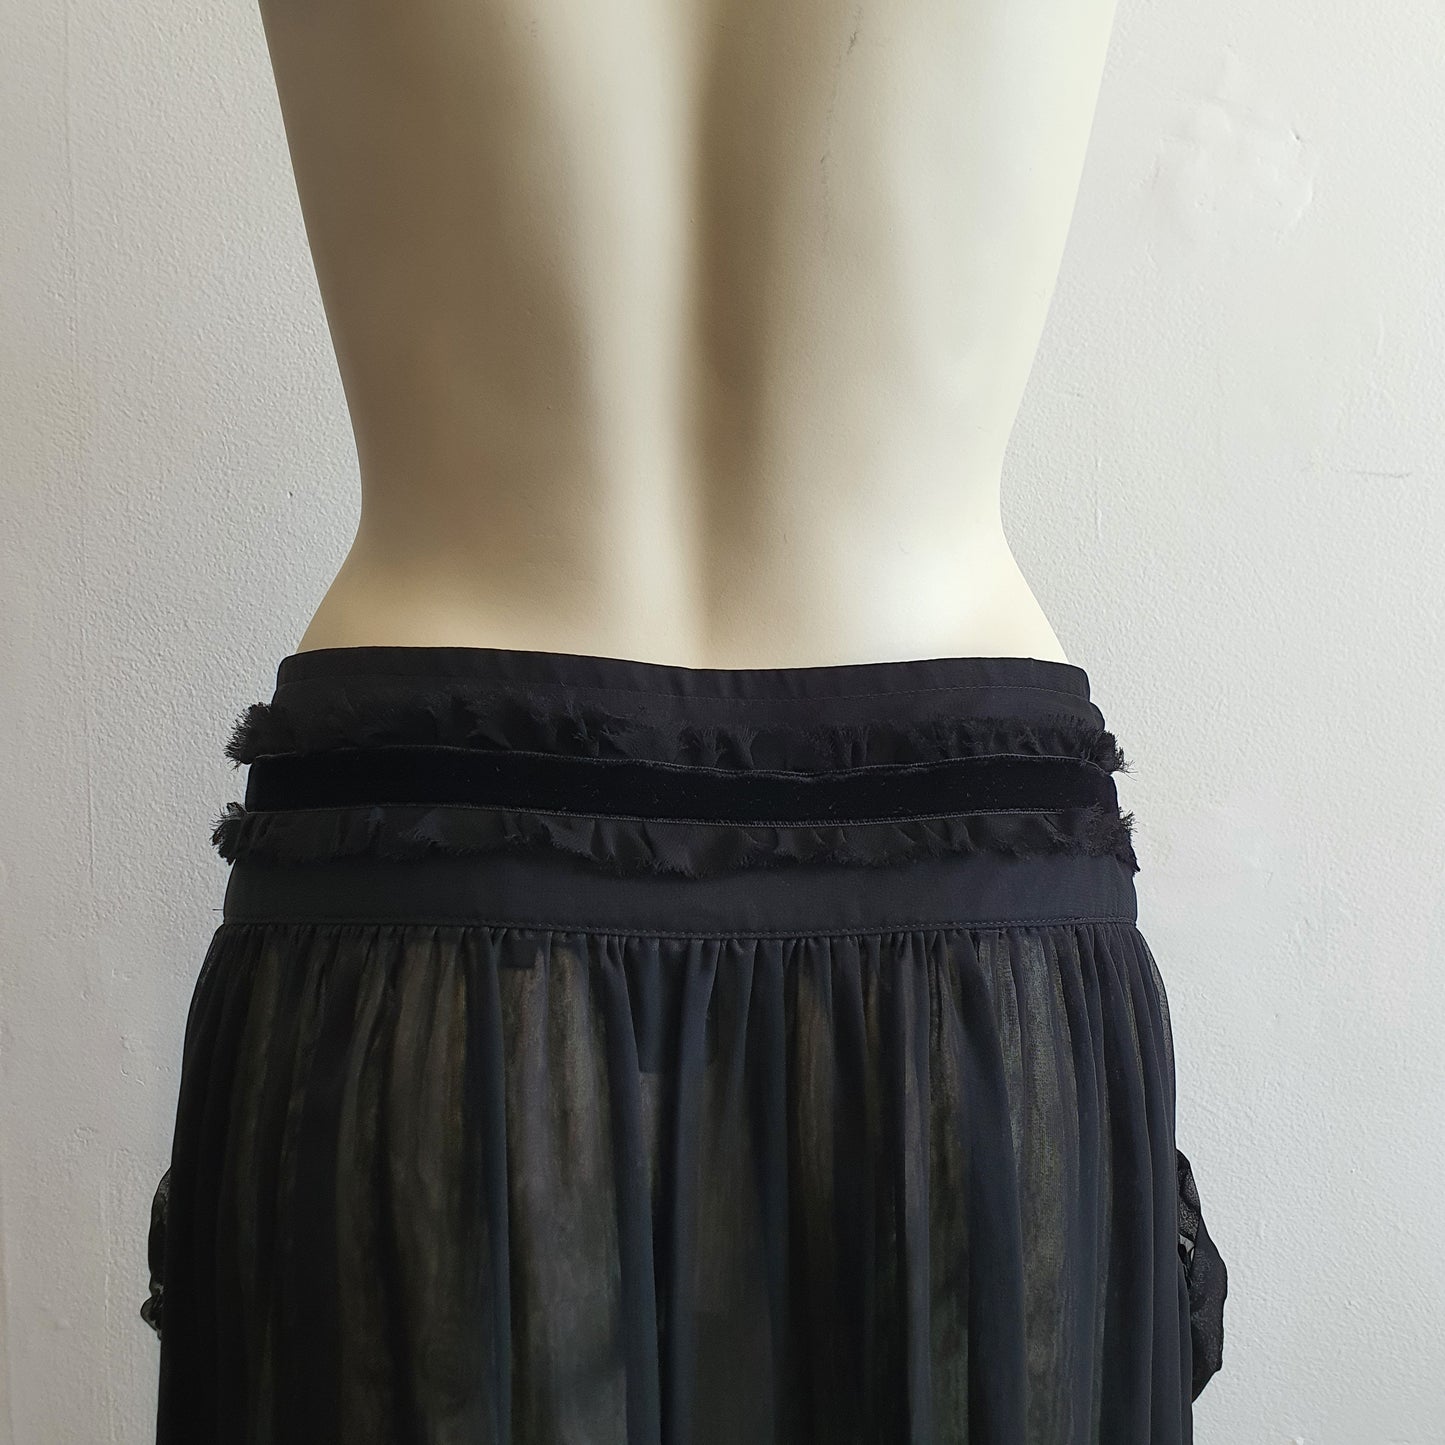 Comme Des Garcons Black Skirt (M)